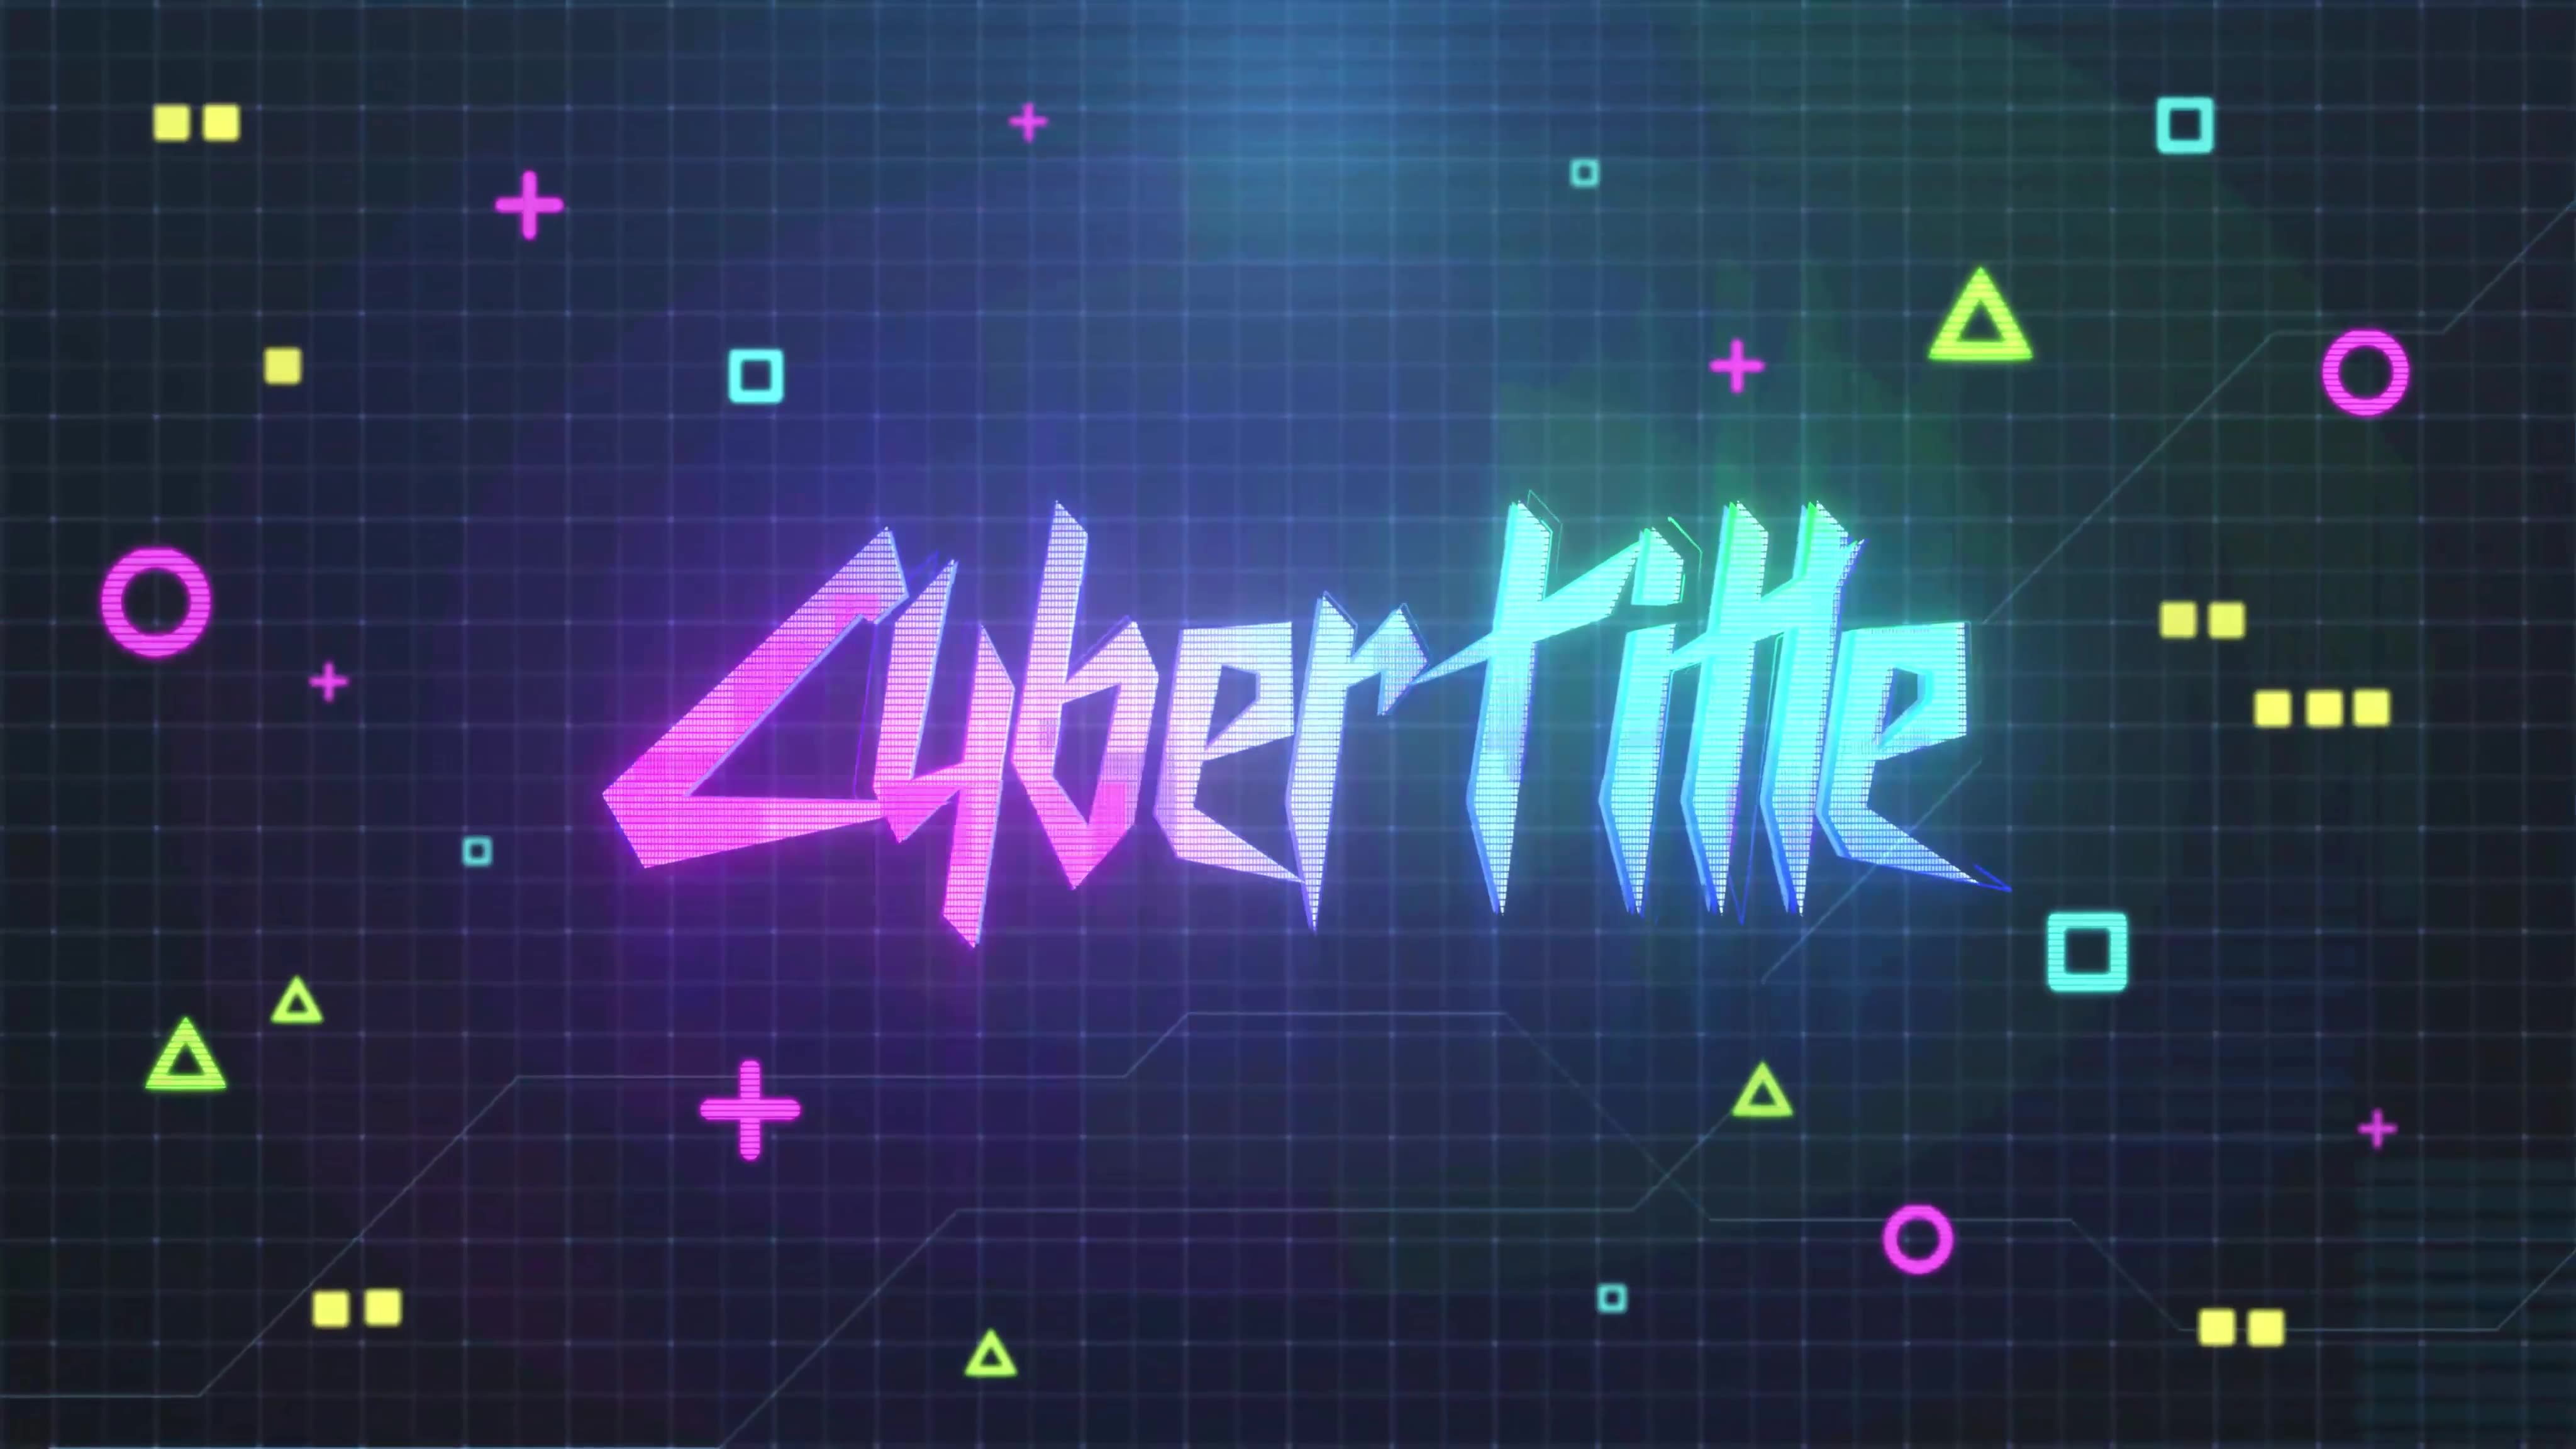 Cyberpunk logo animation фото 98